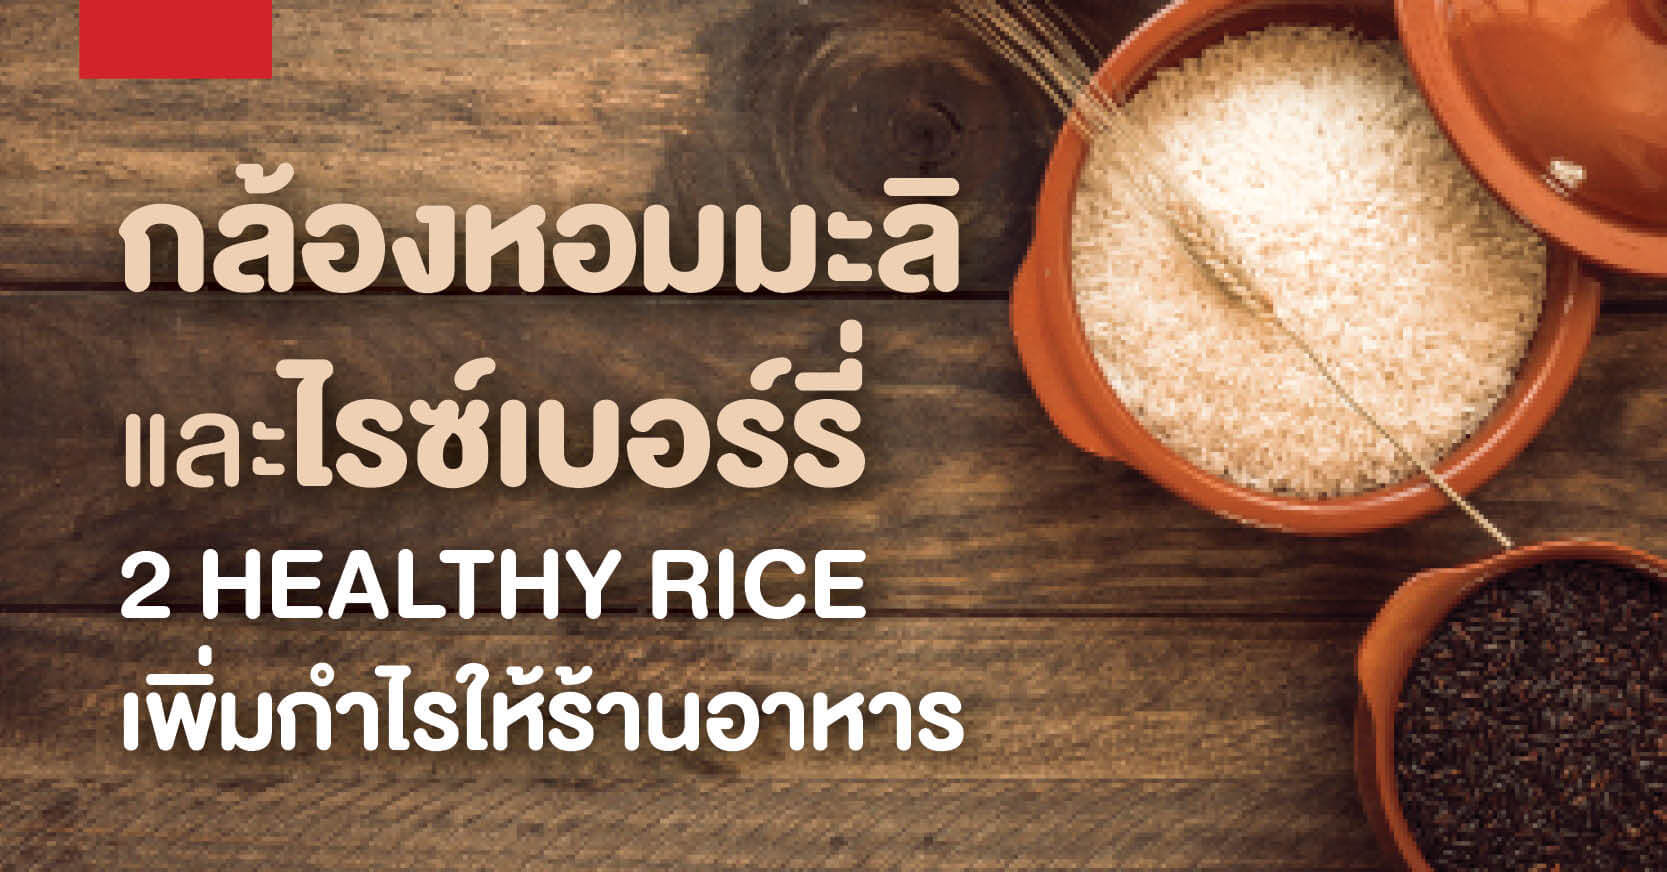 กล้องหอมมะลิ & ไรซ์เบอร์รี่ 2 Healthy Rice เพิ่มกำไรให้ร้านอาหาร